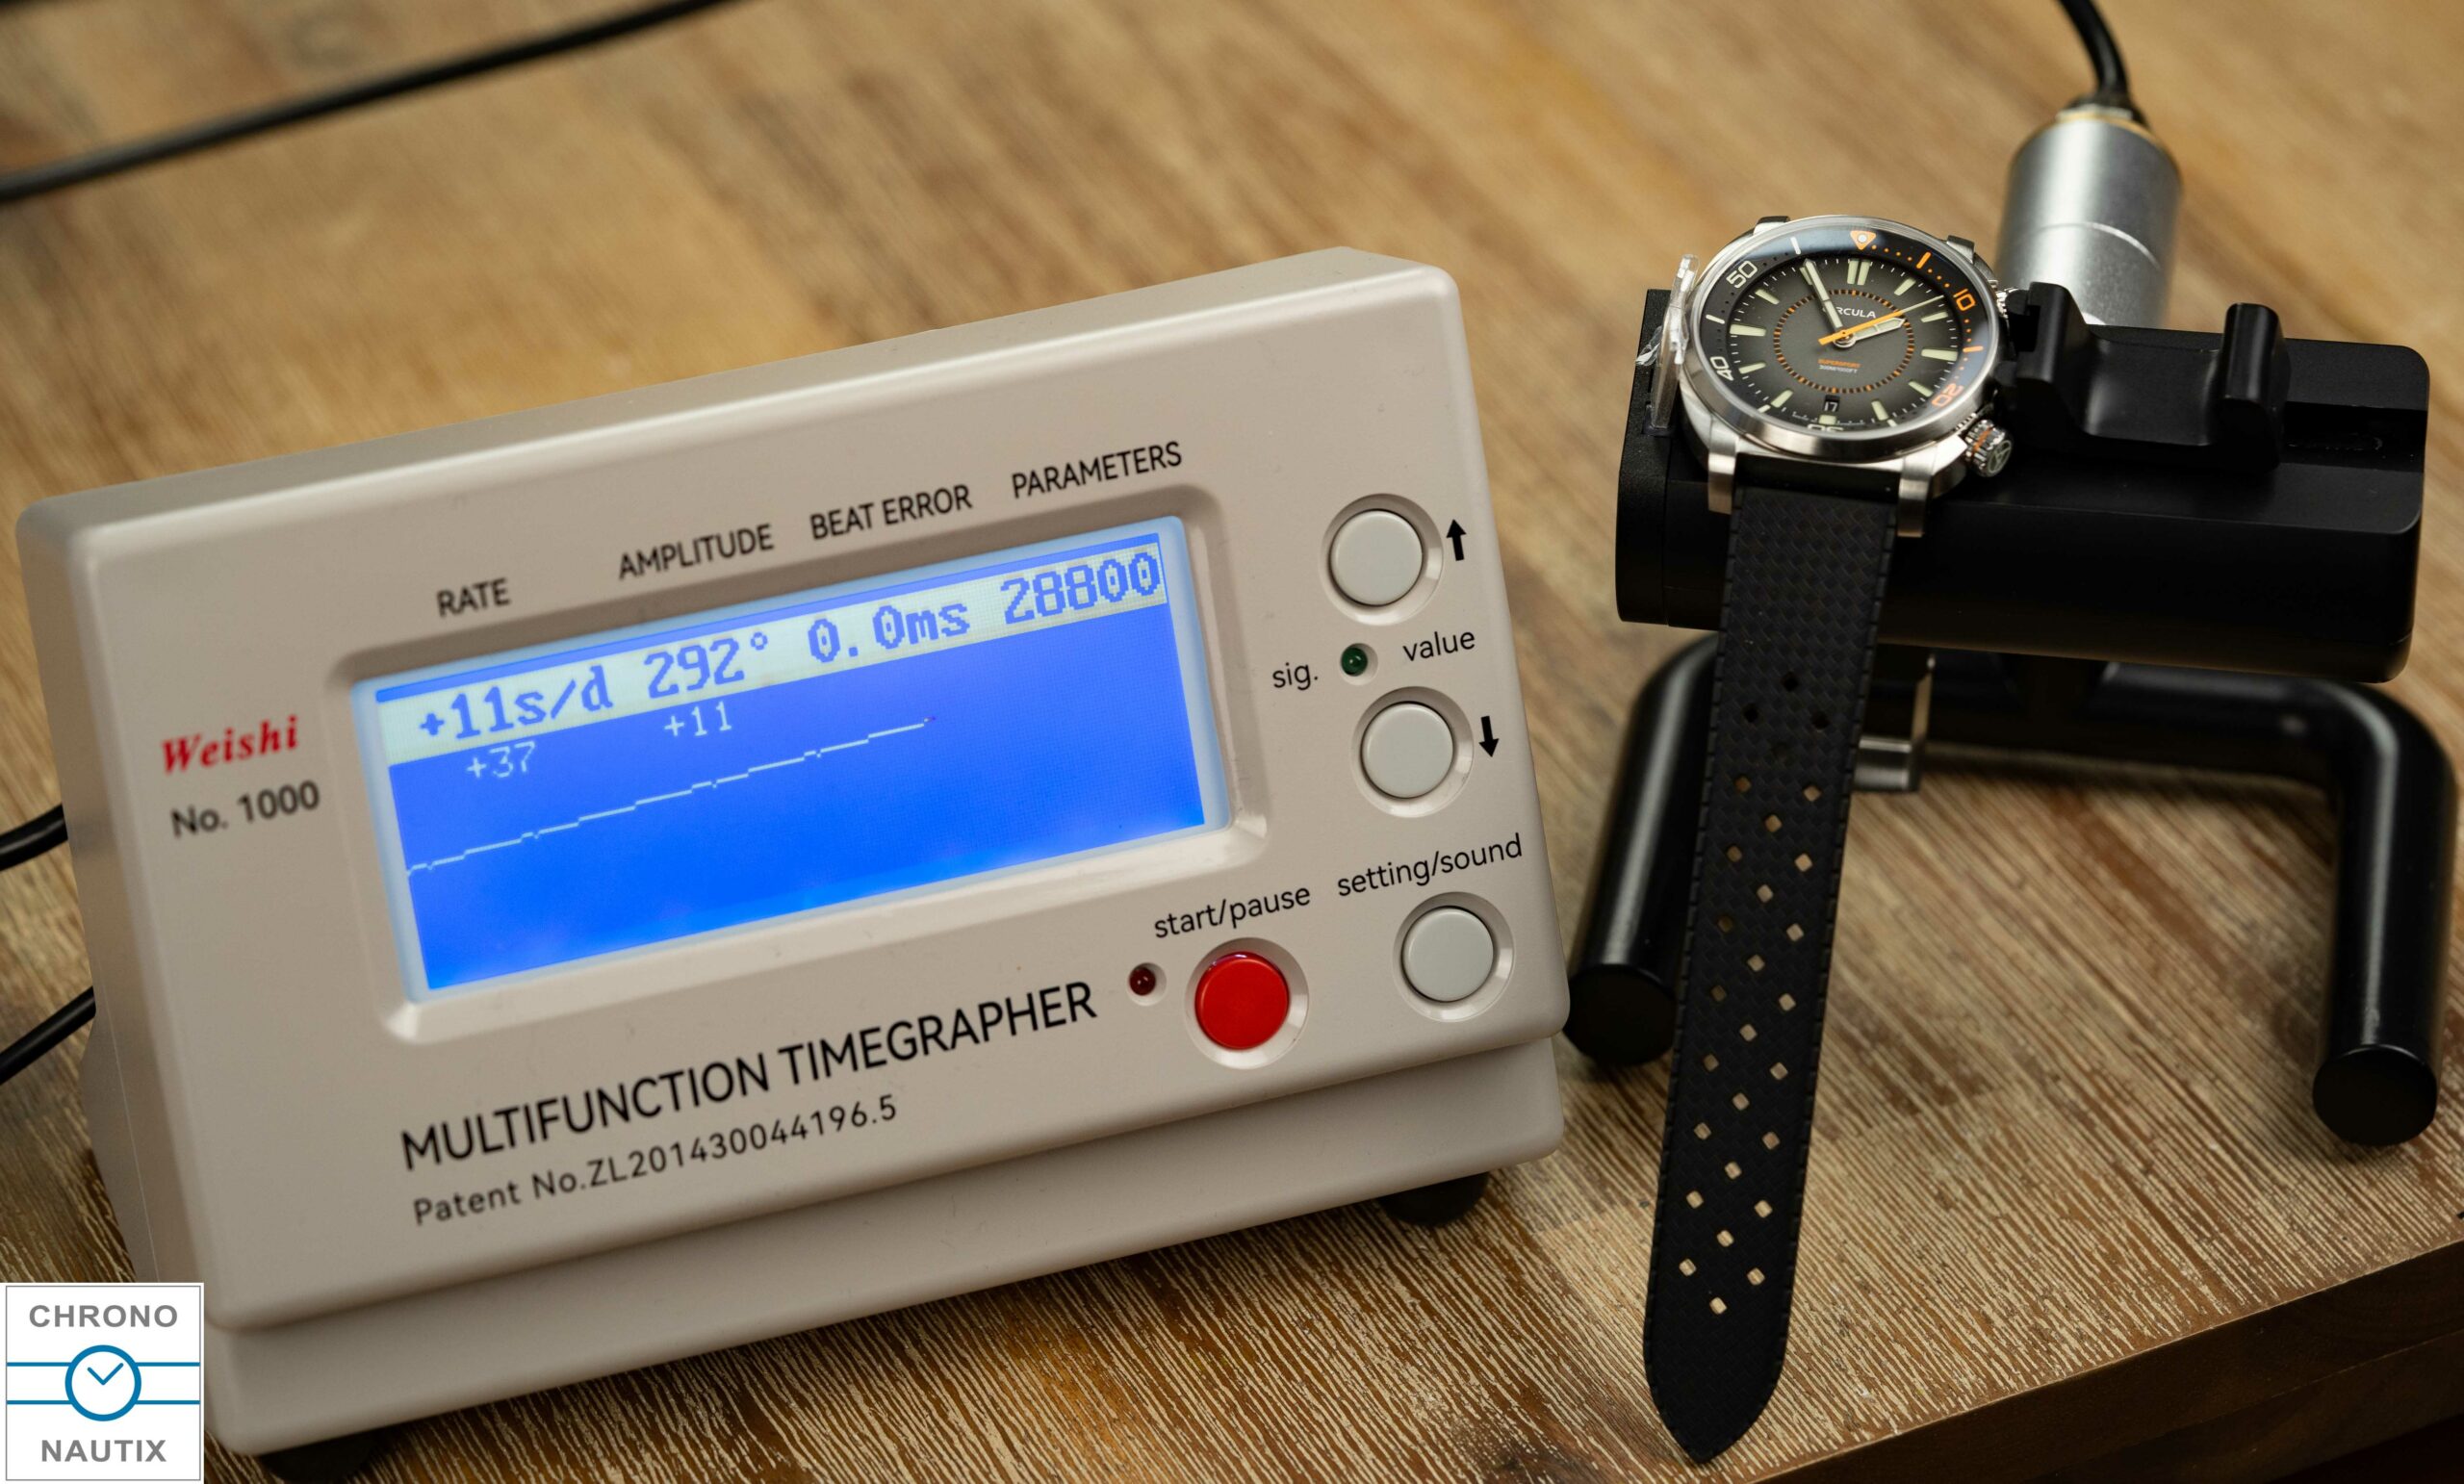 Weishi 1000 Zeitwaage Timegrapher Test 17